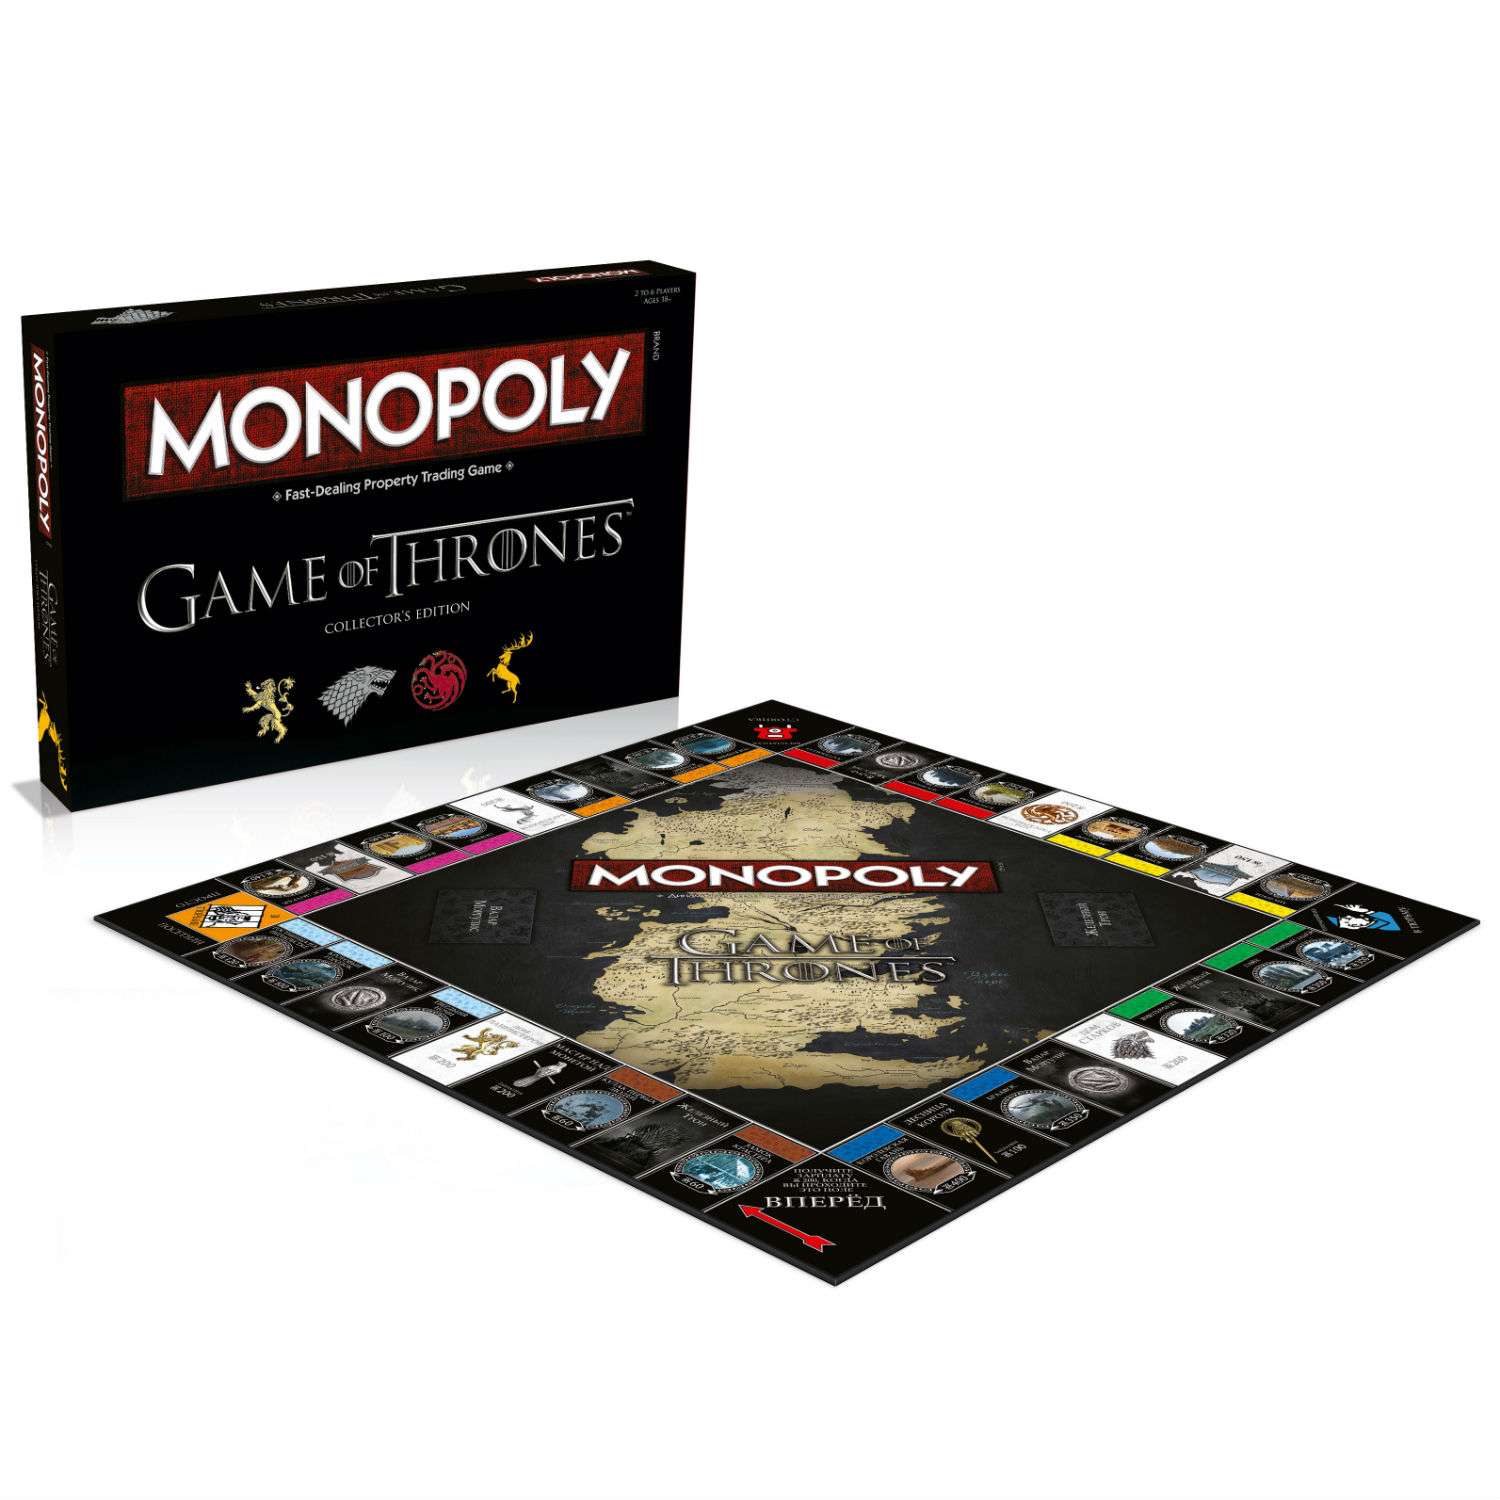 Настольная игра Monopoly монополия Игра престолов - фото 2